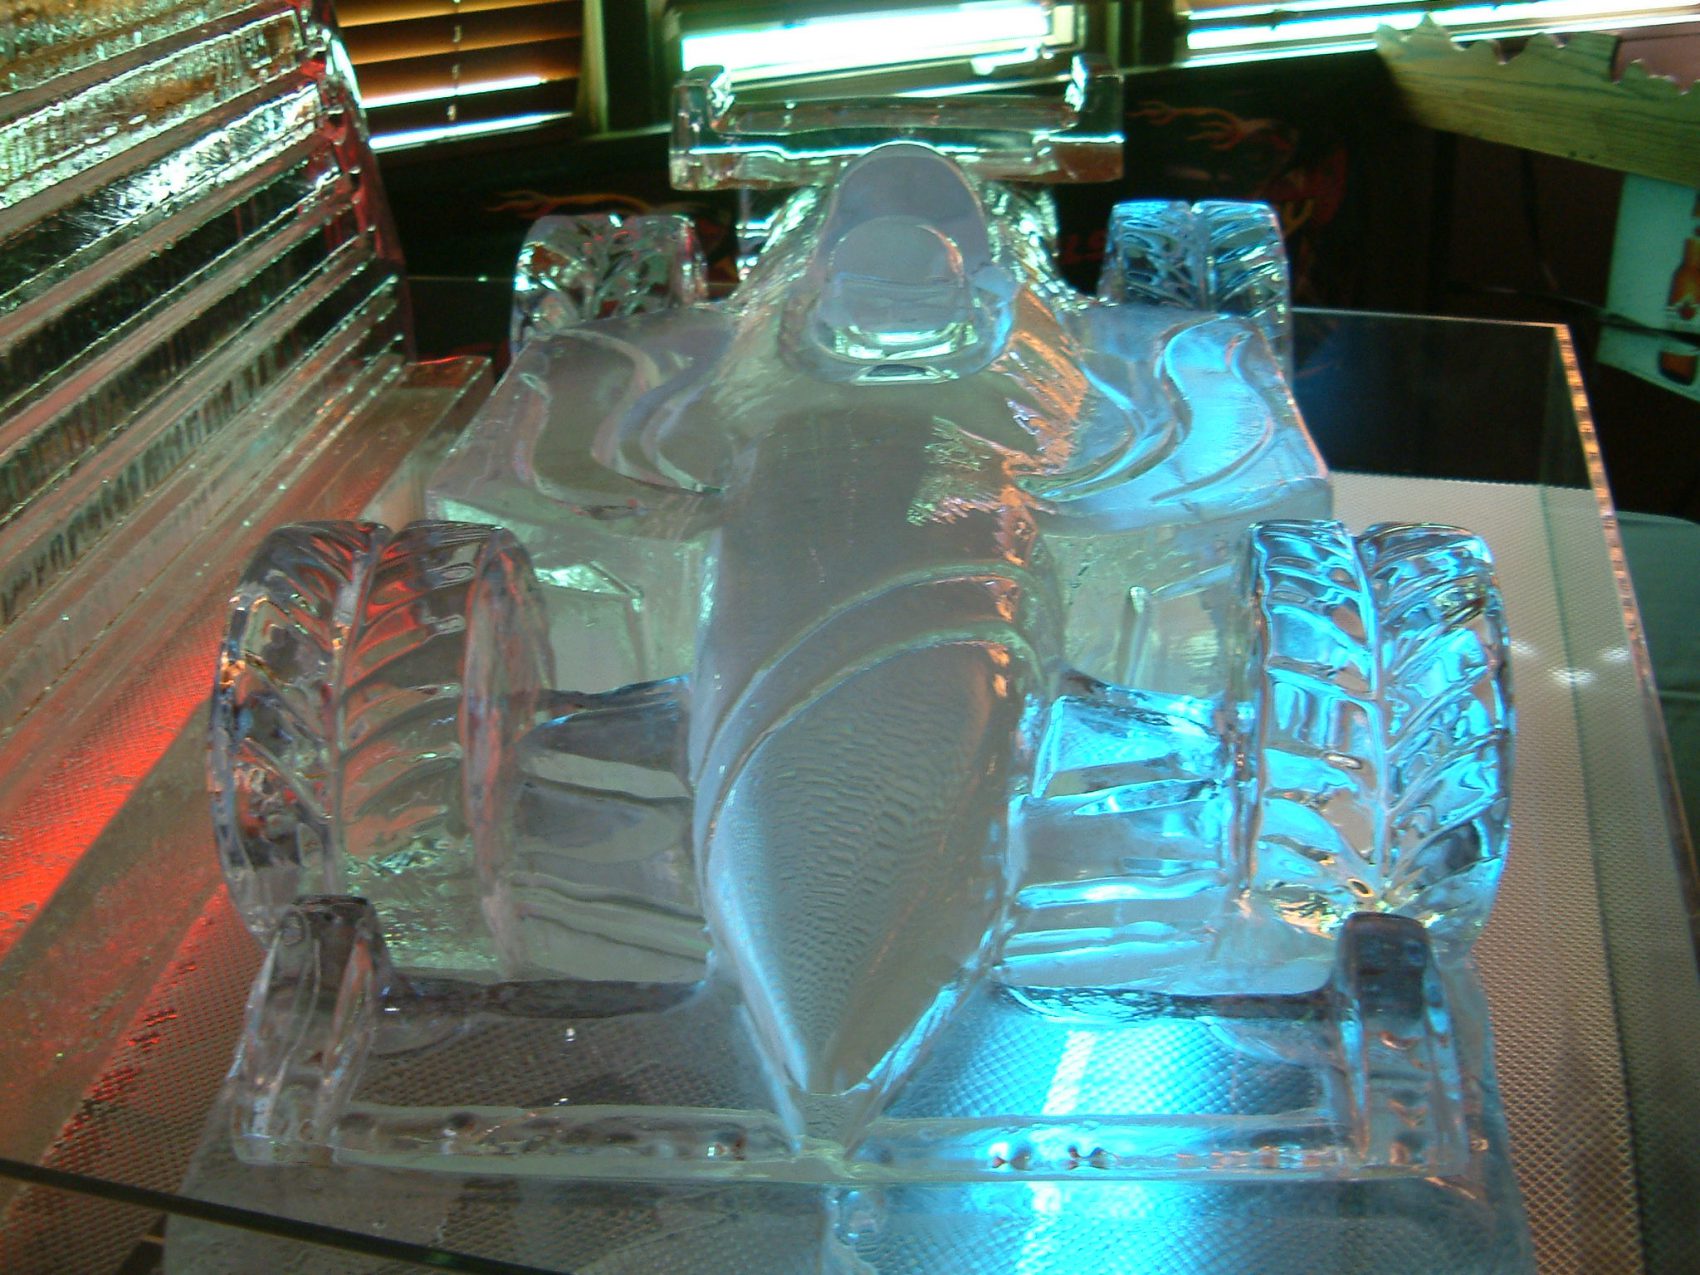 Ice Sculpture of a race car